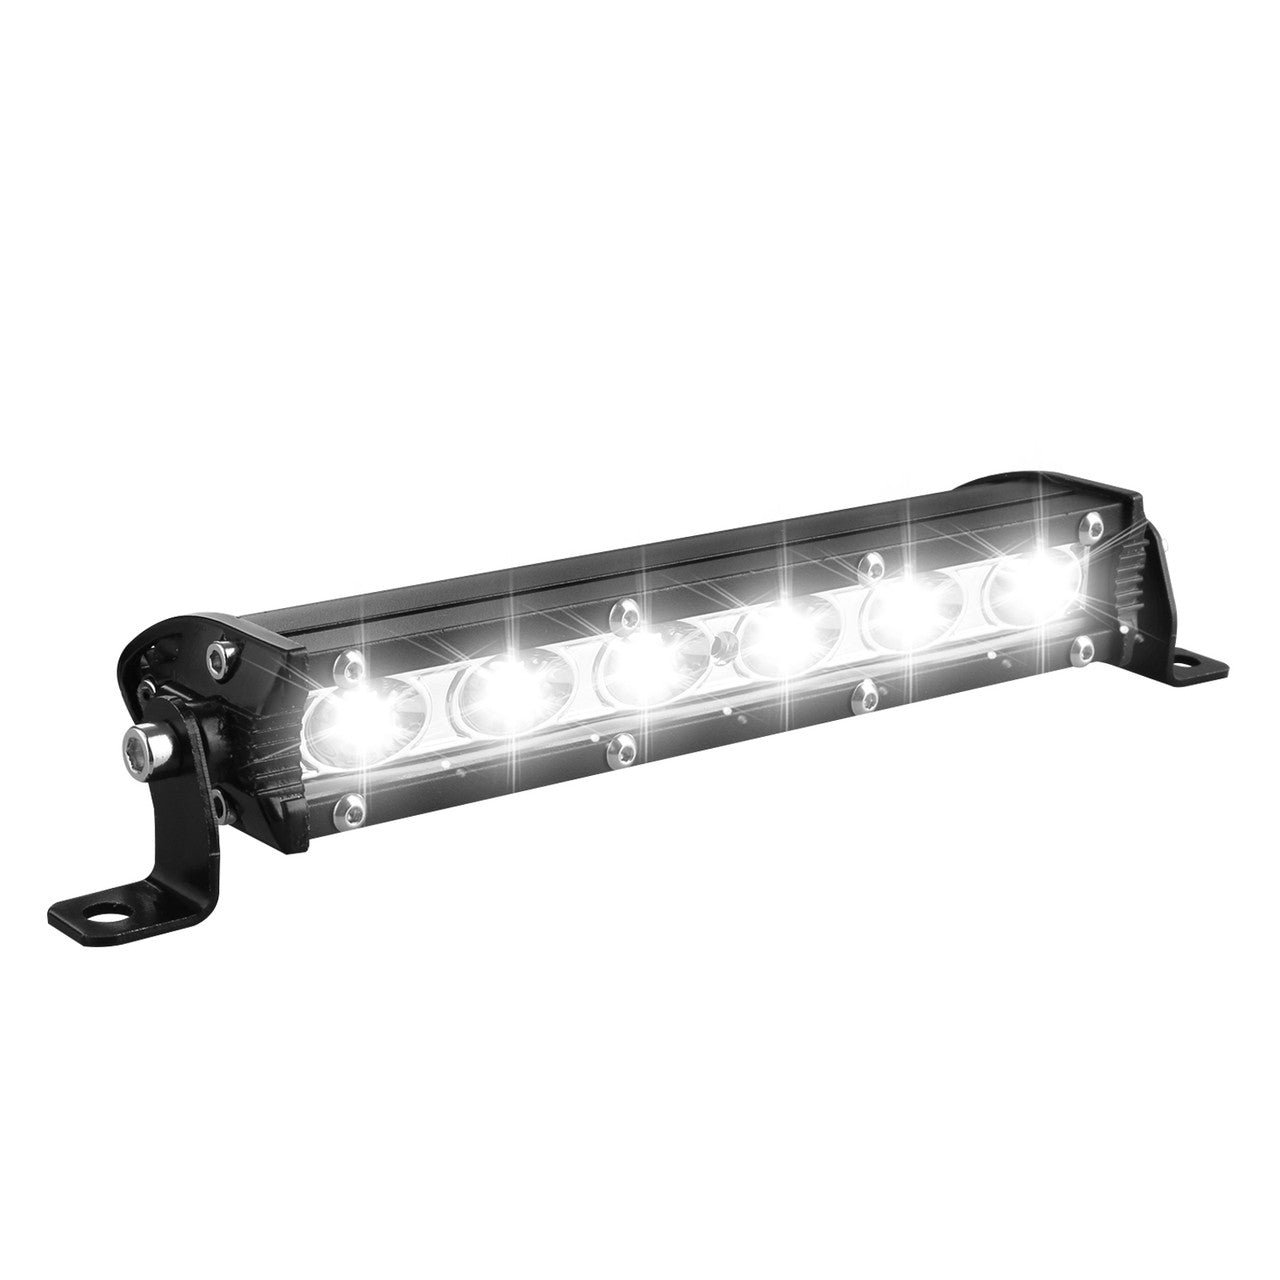 LED Light Bar, 18W 6000K LED Work Light Bar 10-30V 6 LED Driving Lights Fog Offroad Lamp For Vehicles, ATV, Truck SUV